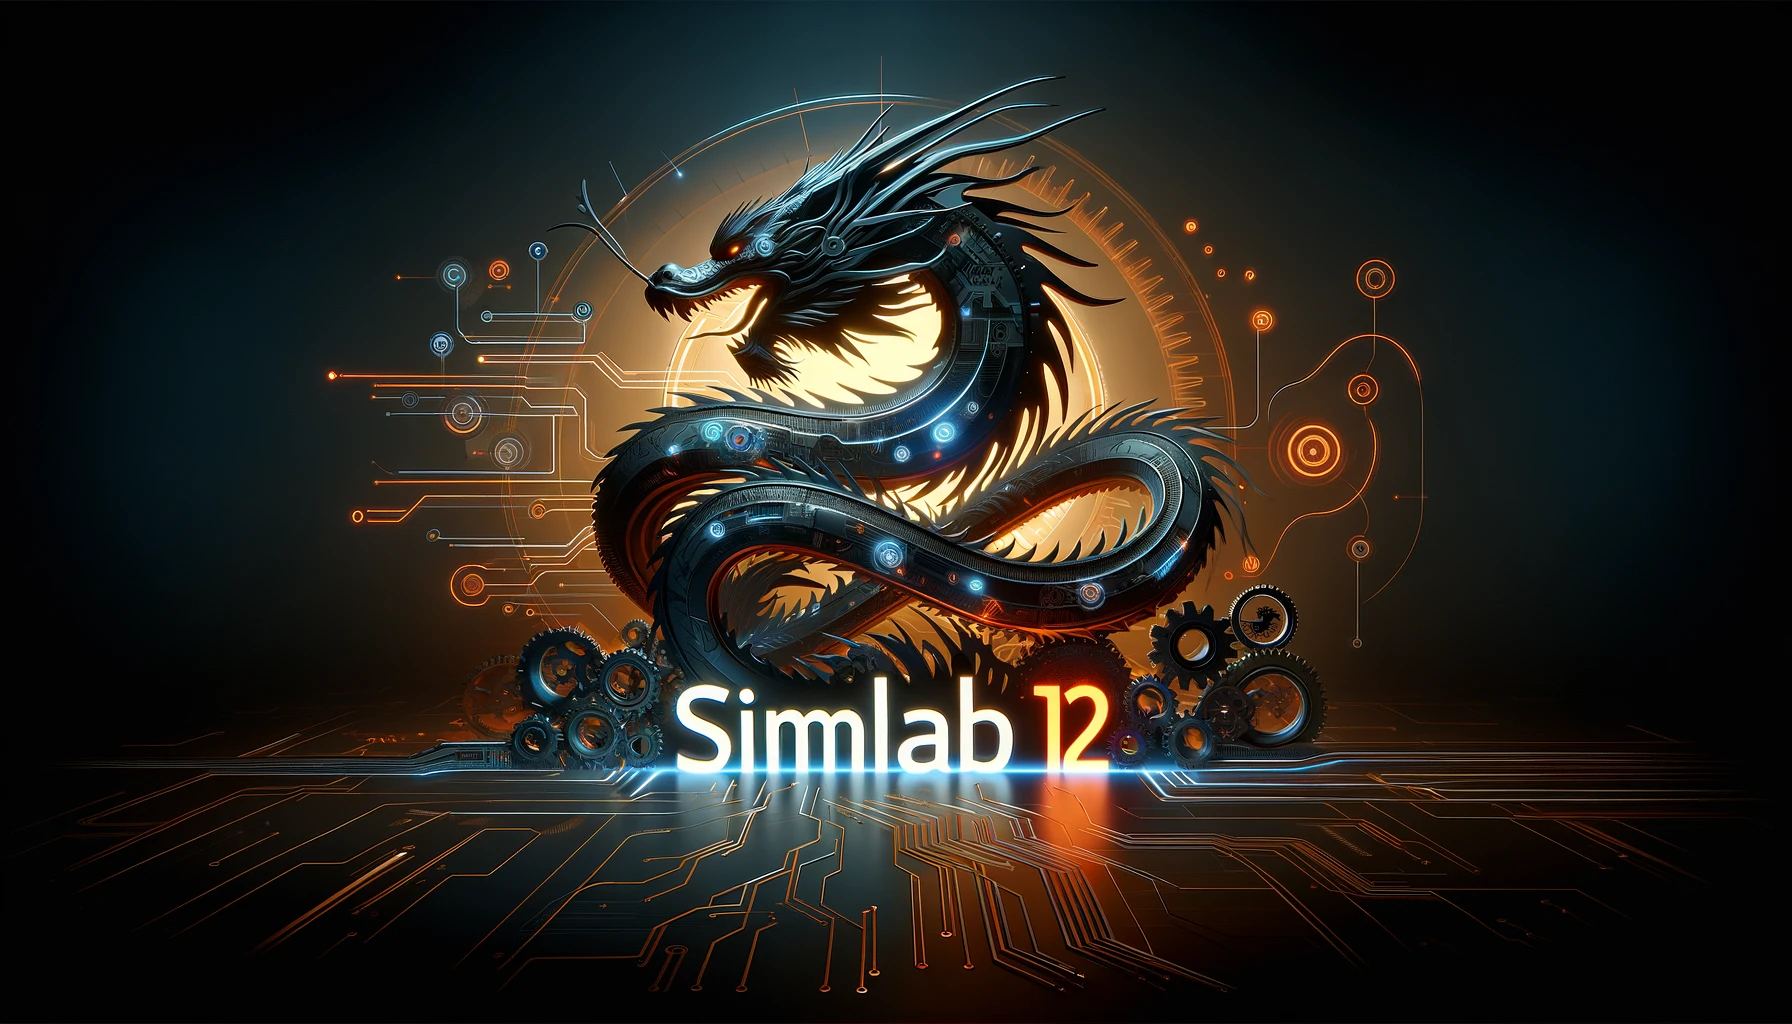 SimLab12